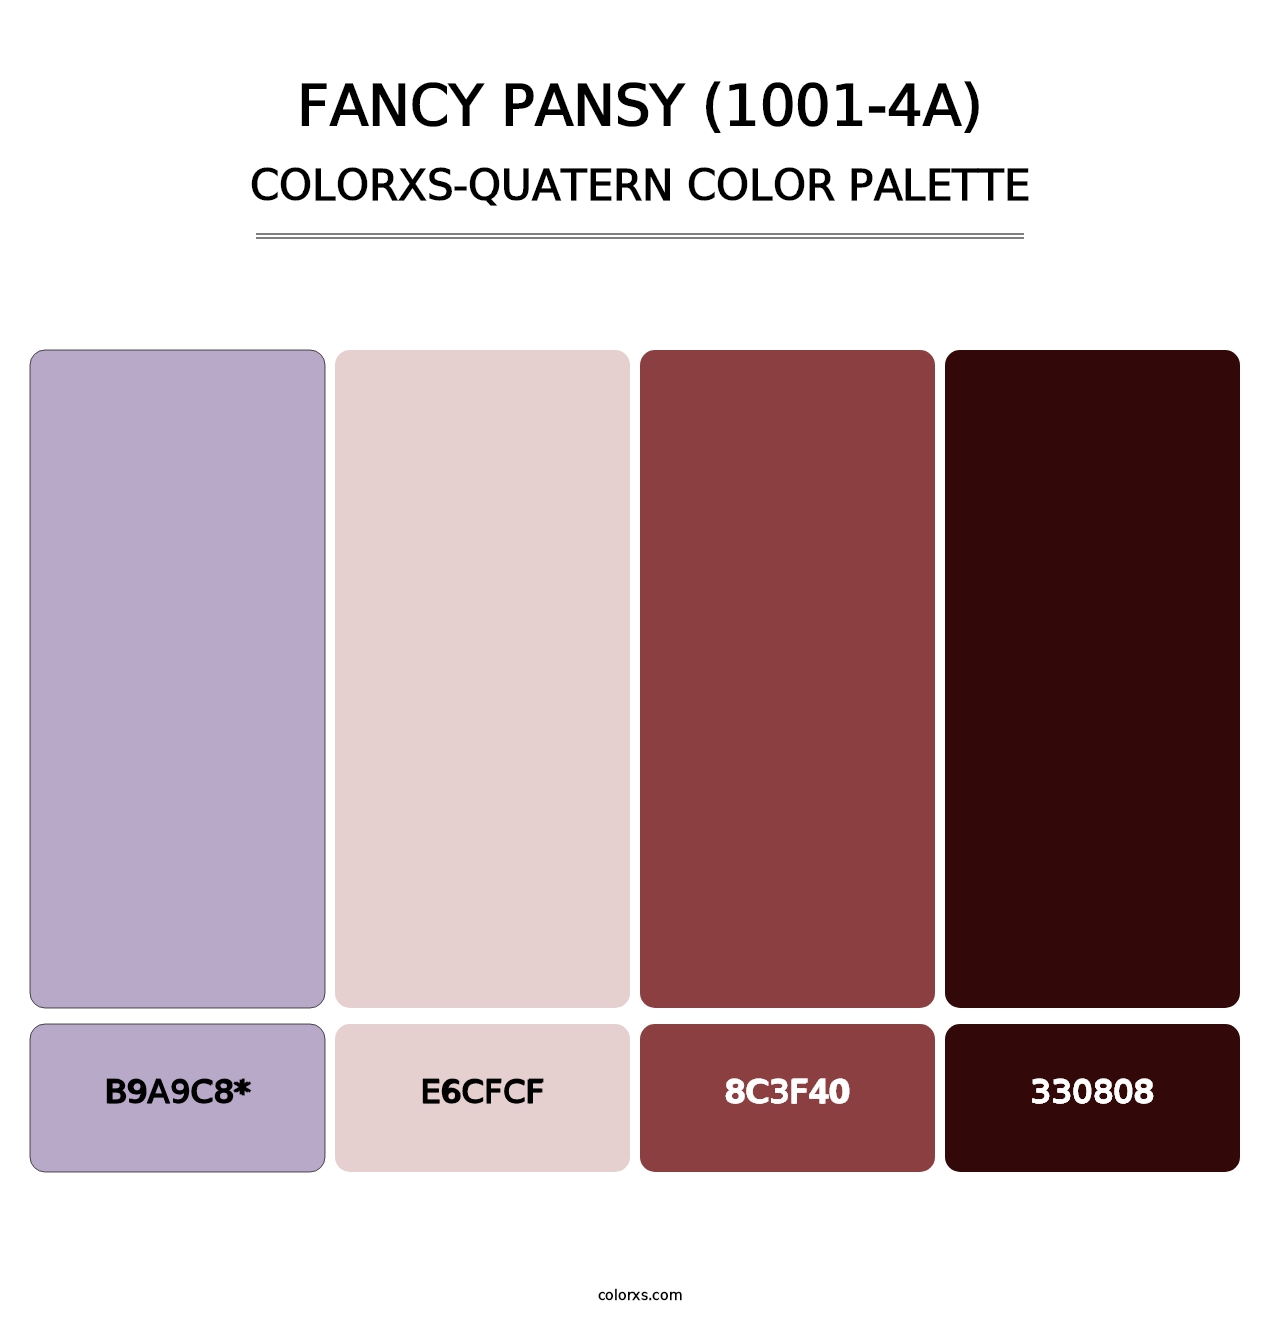 Fancy Pansy (1001-4A) - Colorxs Quatern Palette